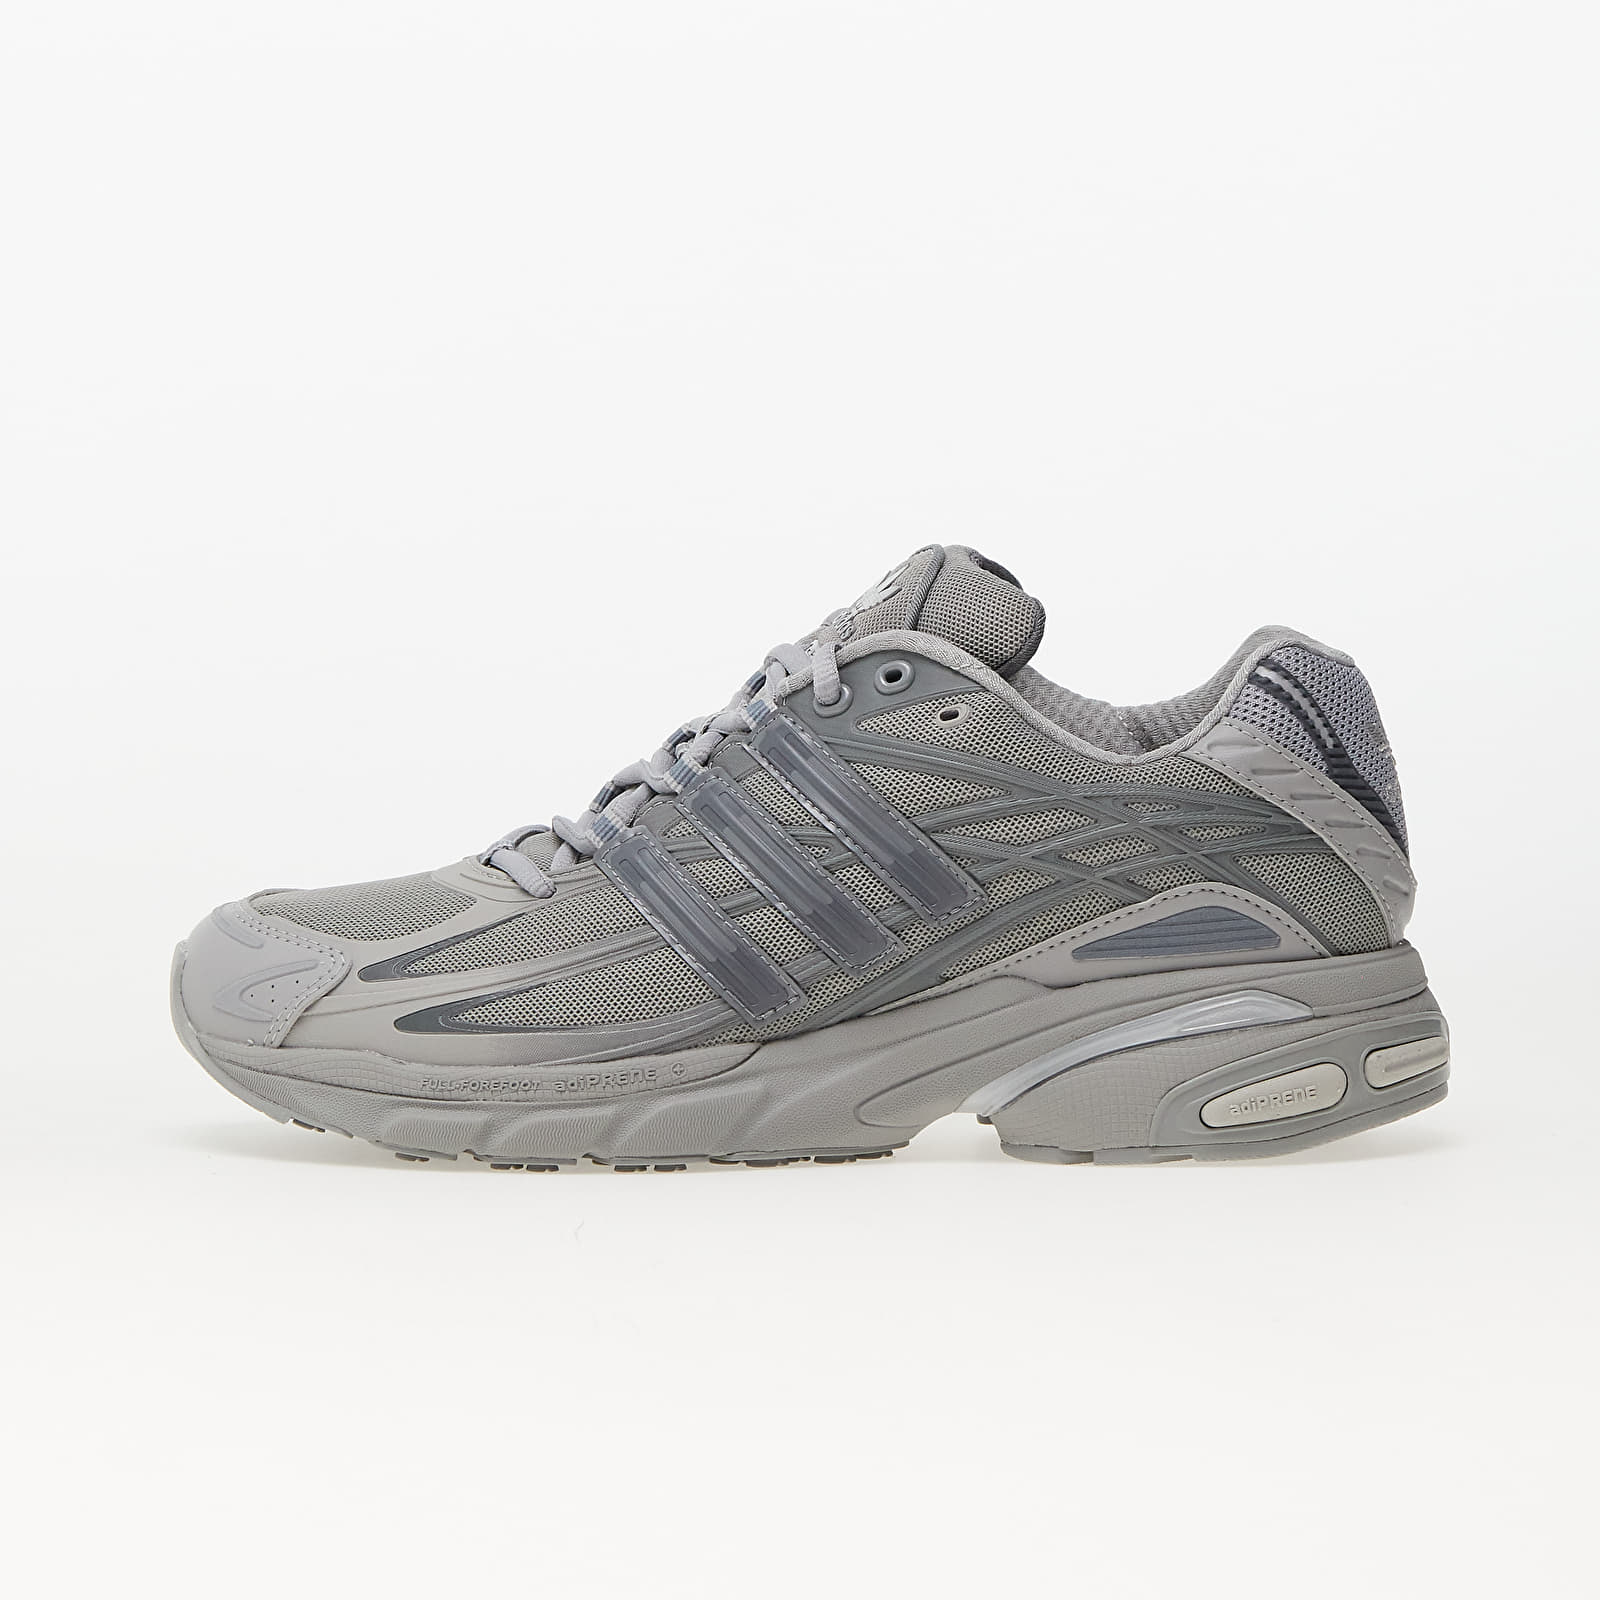 Chaussures et baskets homme adidas Adistar Cushion Multi Solid Grey/ Grey Four/ Grey Three